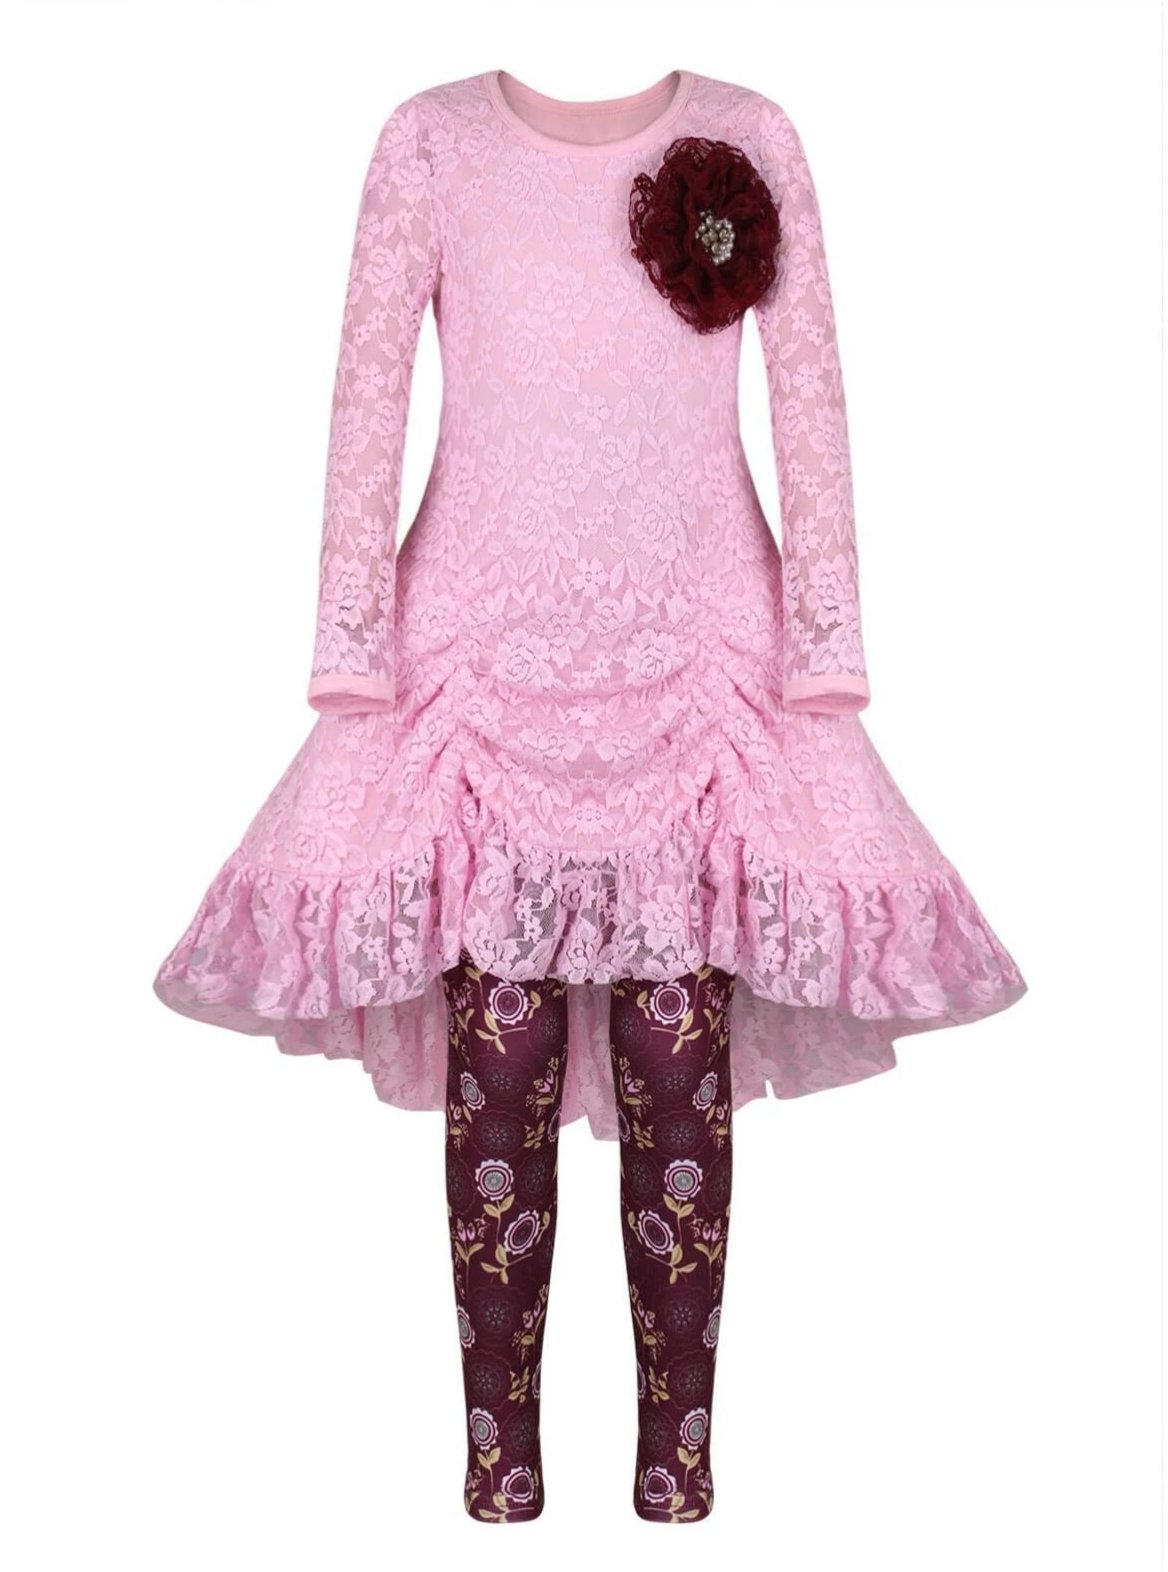 Girls Pink Drawstring Lace Tunic & Floral Leggings Set - Pink / 2T/3T - Girls Fall Dressy Set